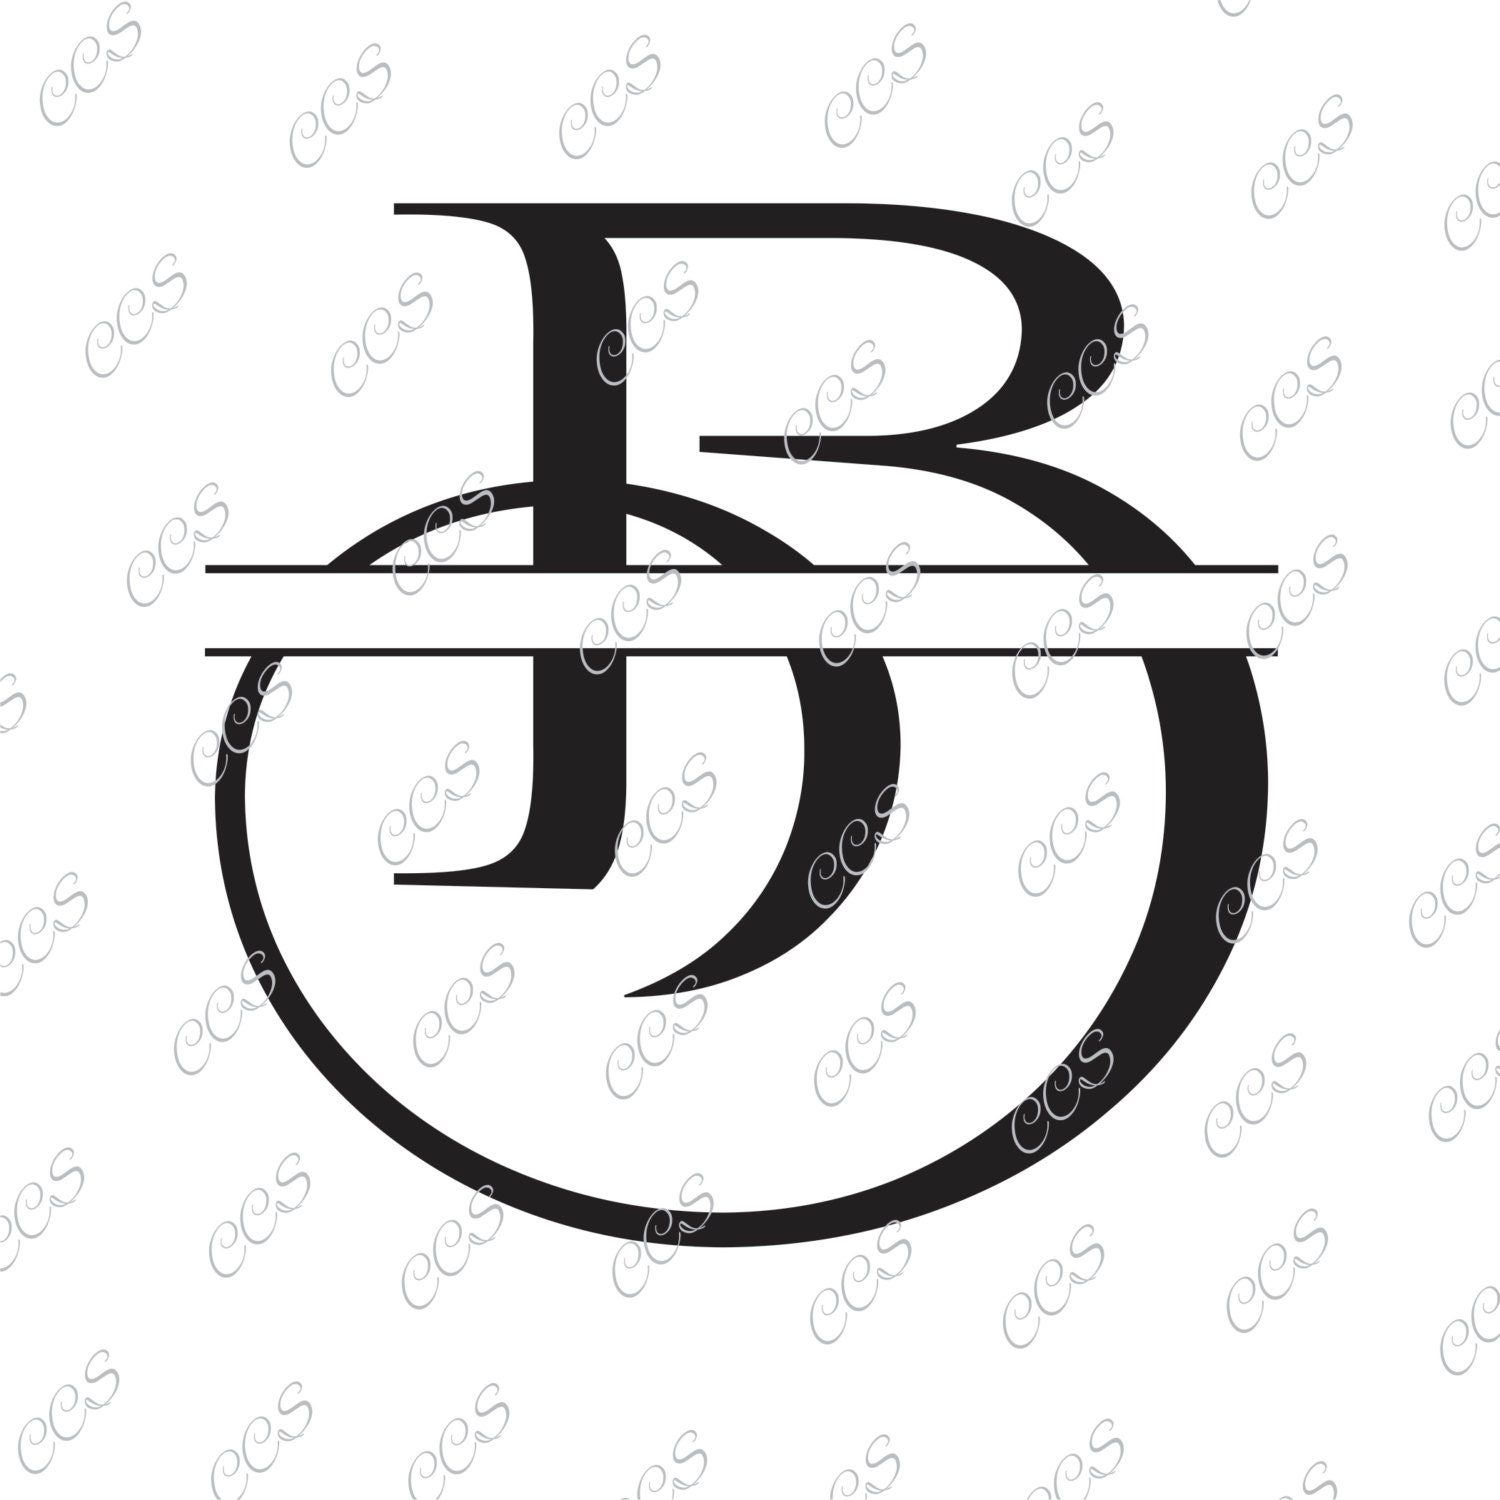 Download Free SVG Cut File - B Split Monogram SVG Split letter B Svg Divi.....